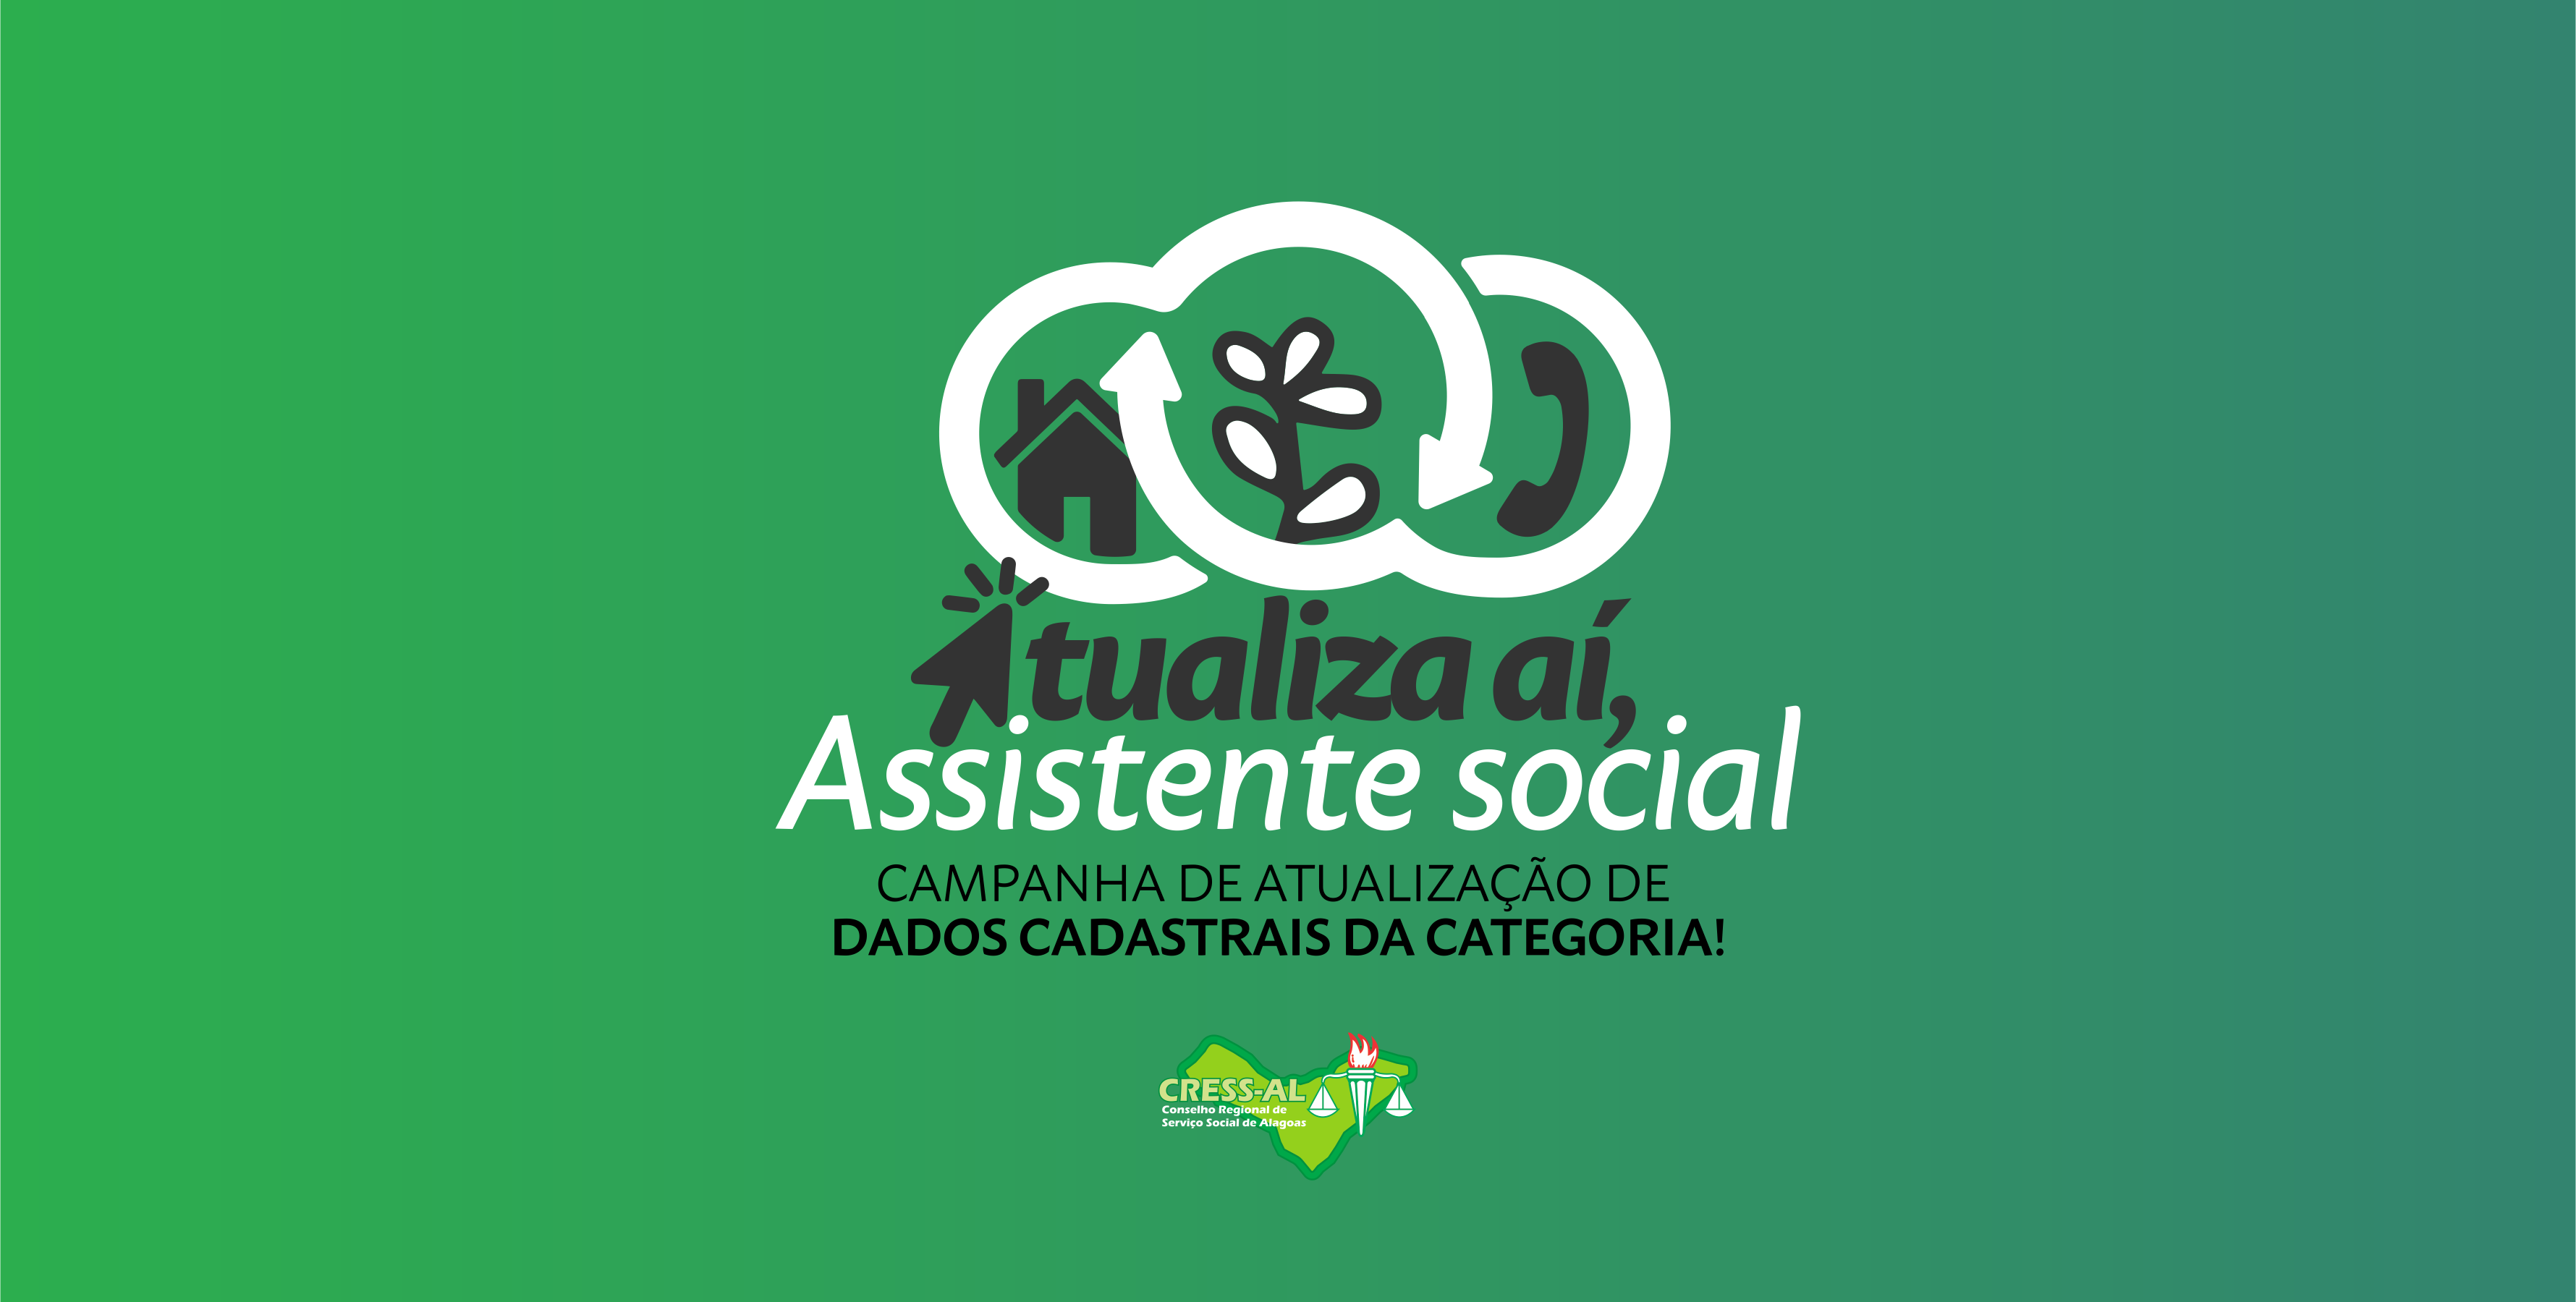 Atualiza Aí, Assistente Social: CRESS Alagoas inicia campanha para atualização de dados cadastrais da categoria no estado